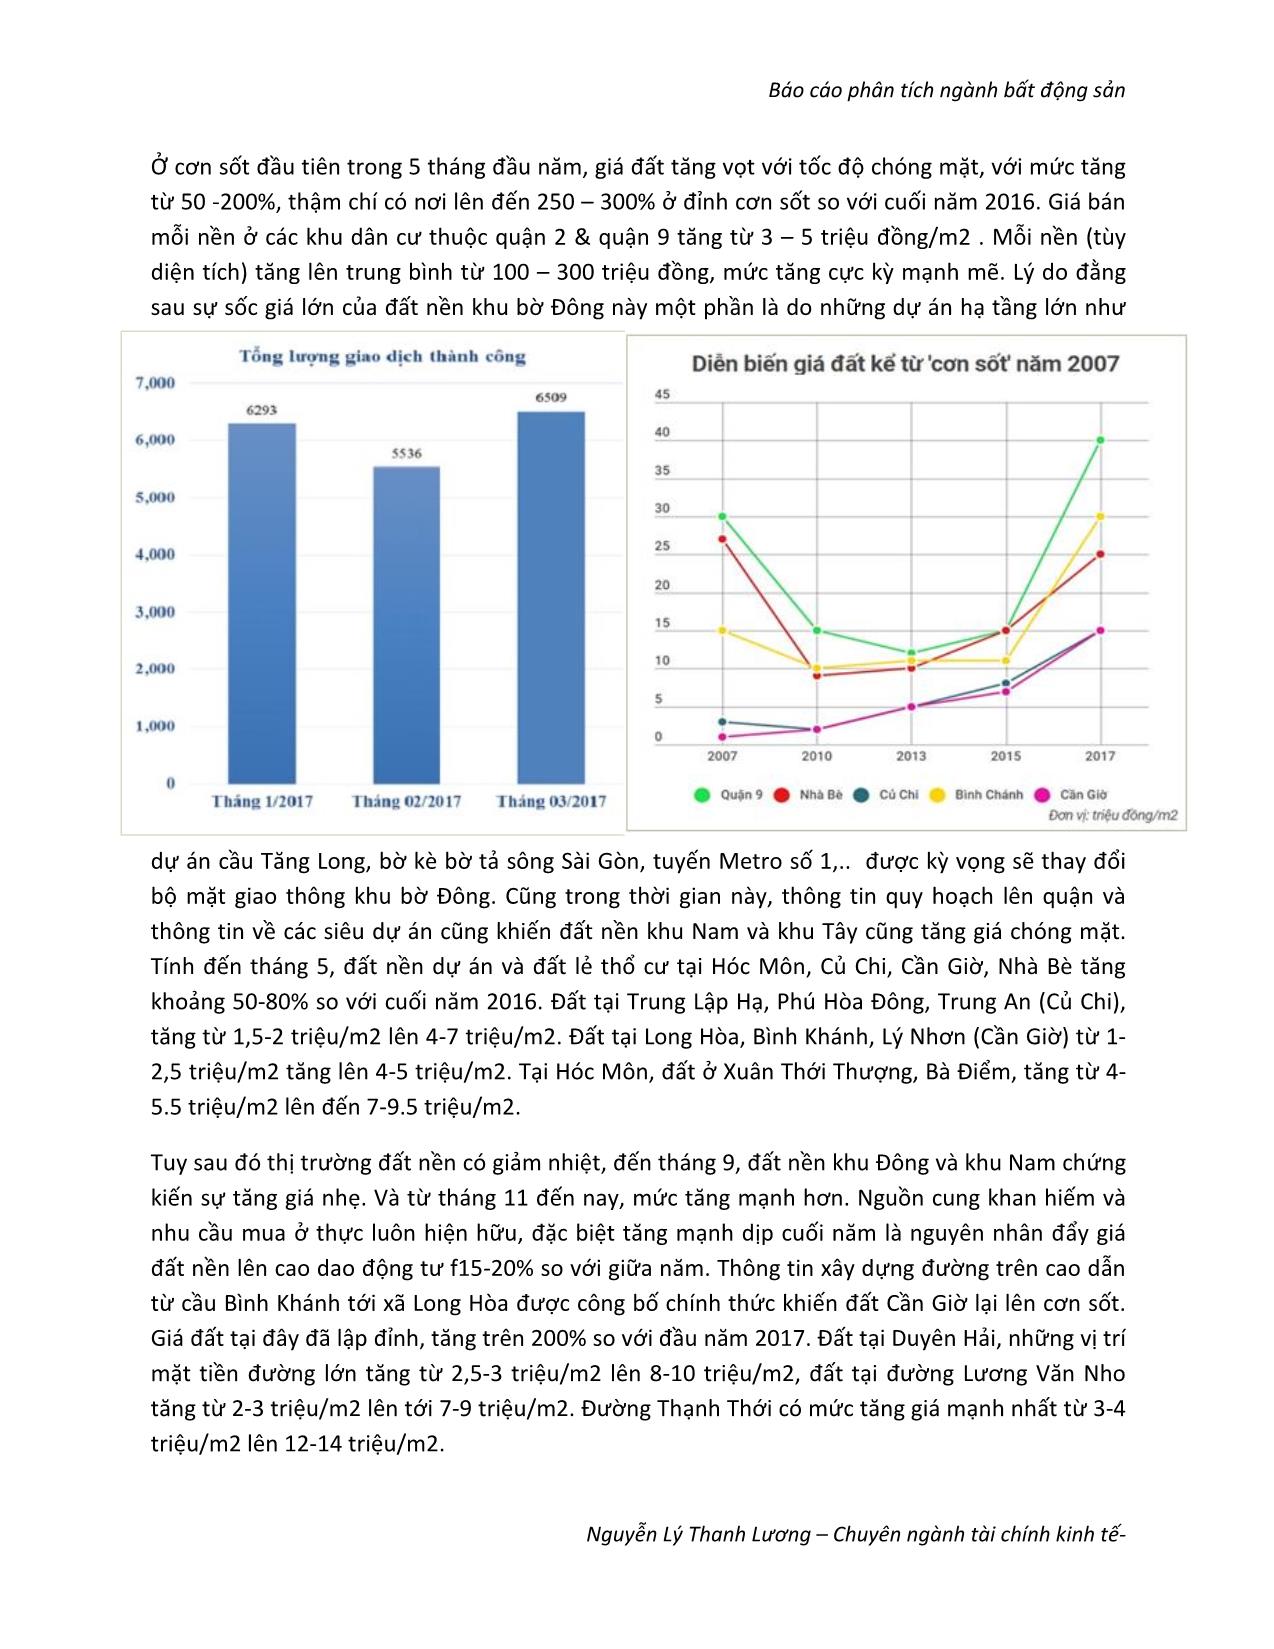 Báo cáo phân tích ngành bất động sản - Nguyễn Lý Thanh Lương trang 7